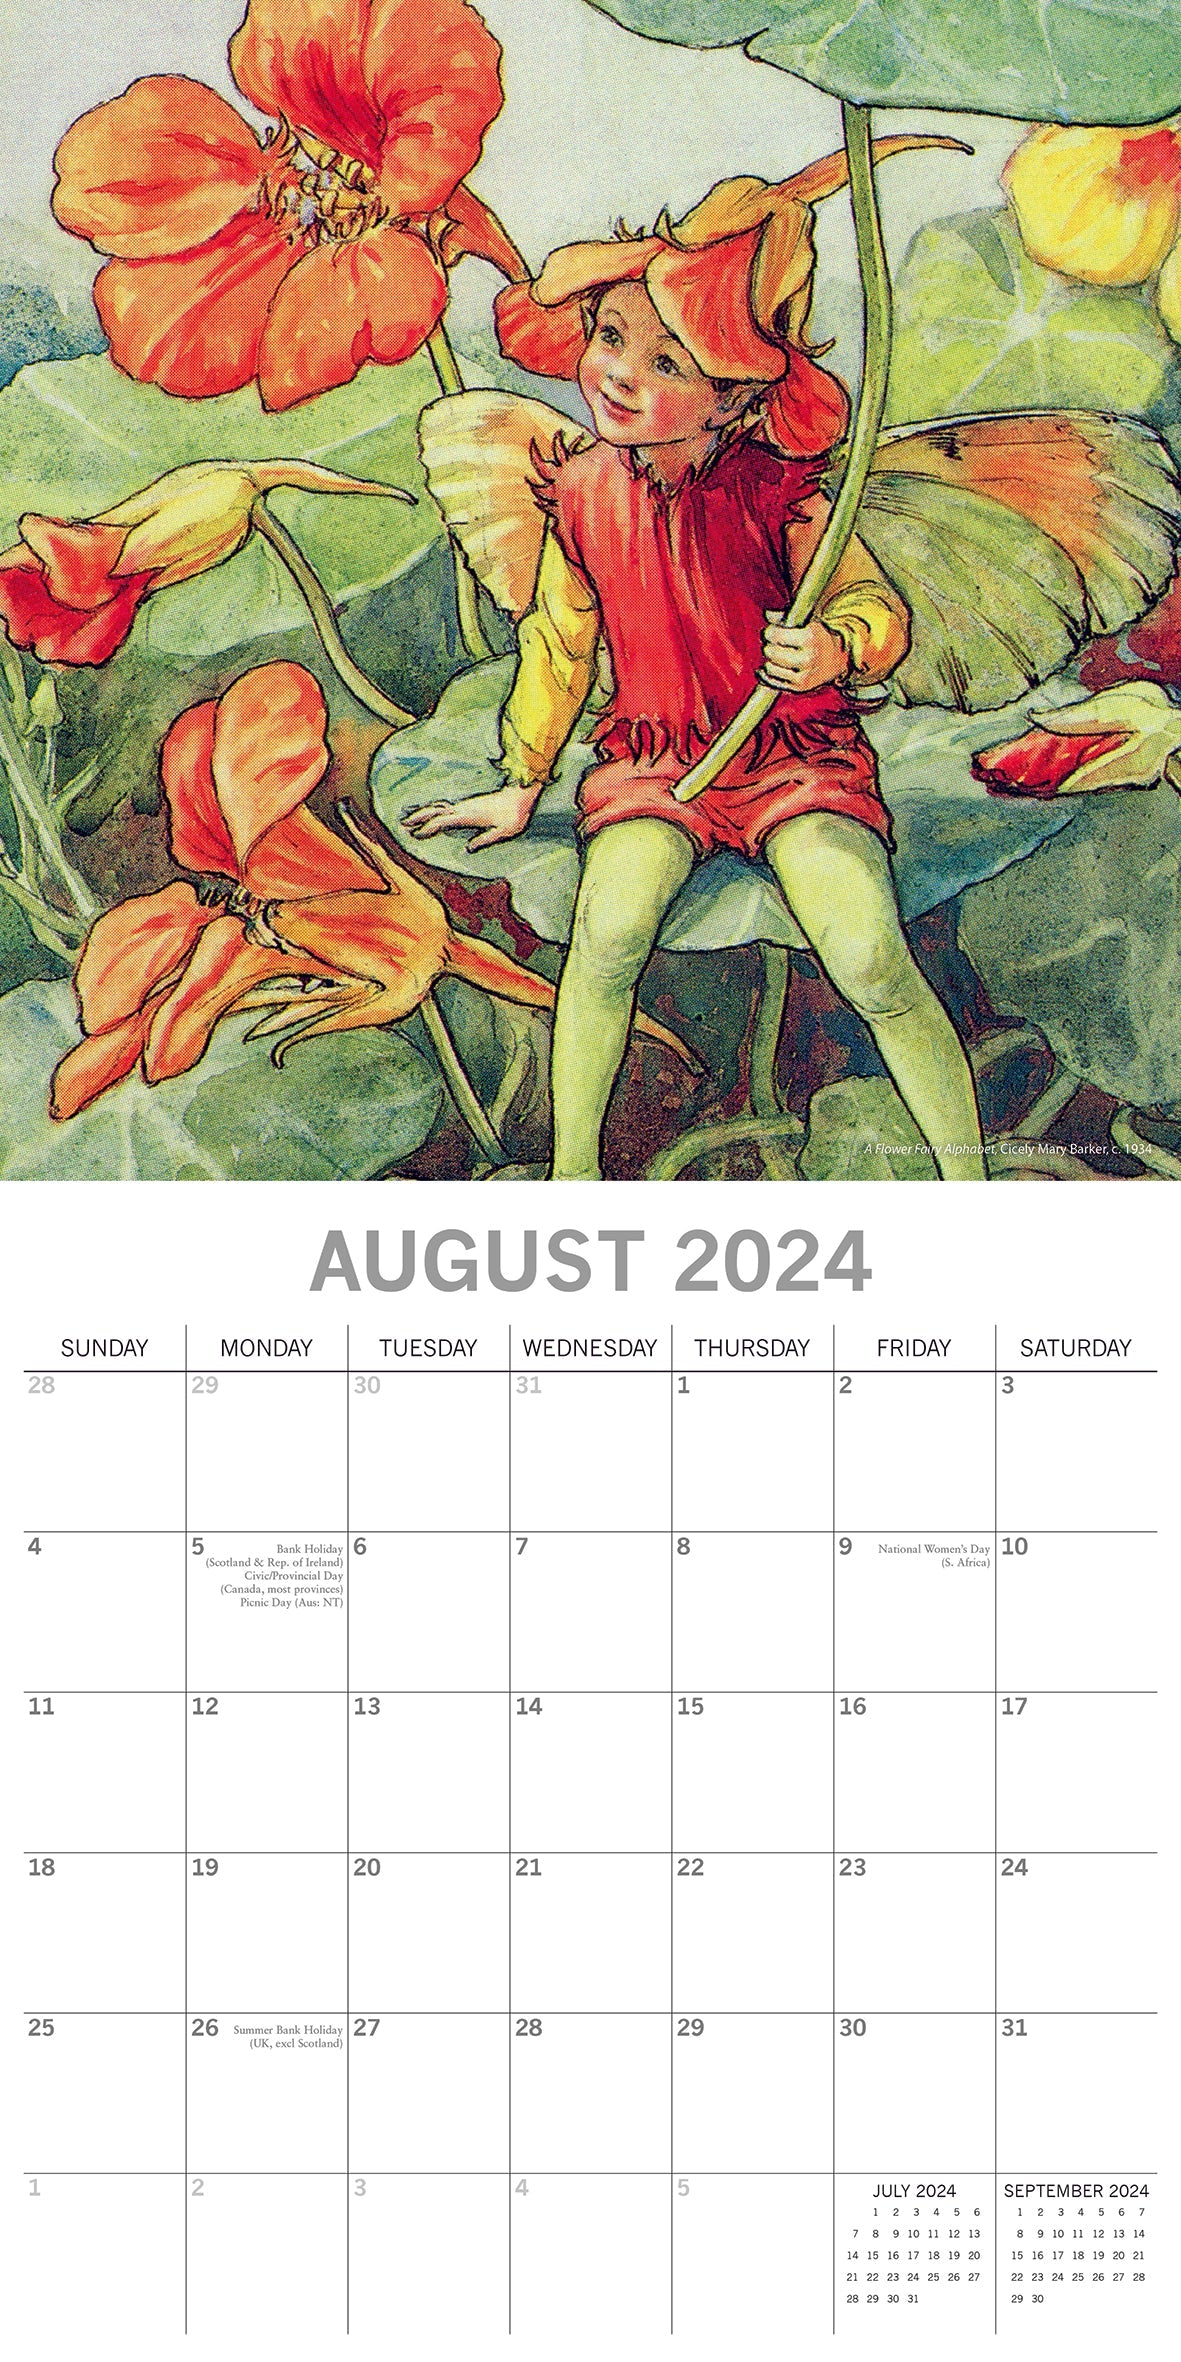 2024 Fairies - Square Wall Calendar